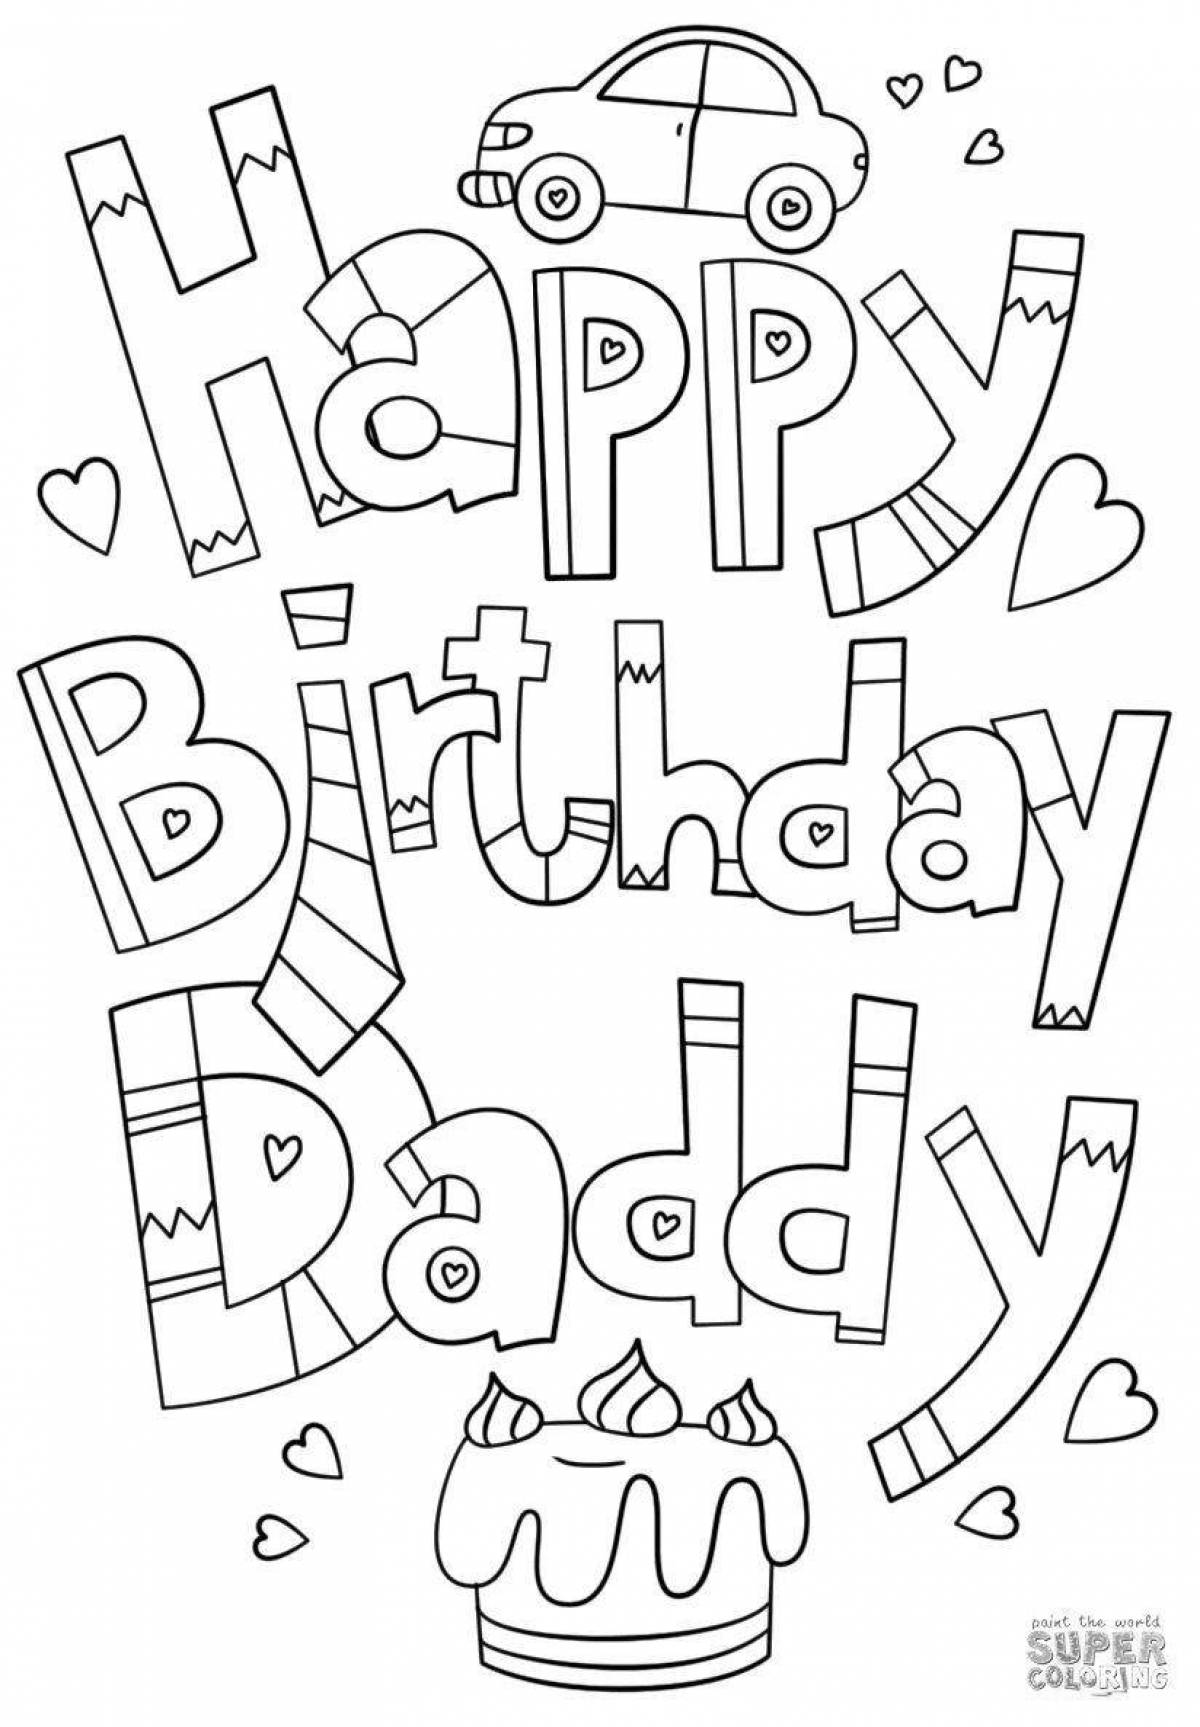 Волнующая раскраска «с днем рождения, папа» от дочери